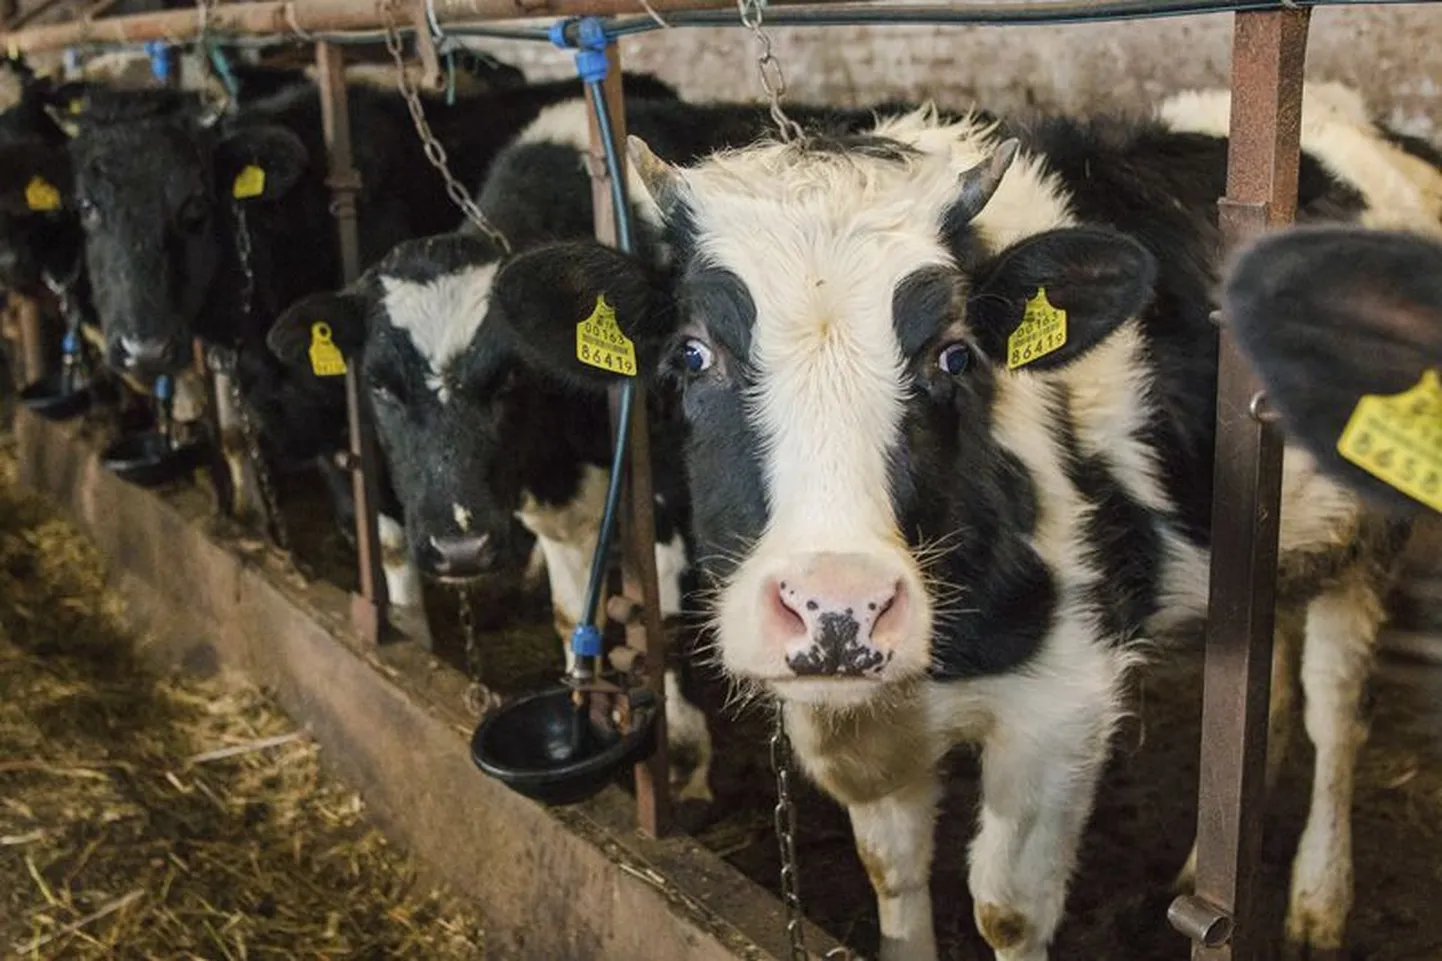 Nõudlus piimatoodete järele on viimastel kuudel maailmaturul aina tõusnud. Kuid raske majanduslik olukord sunnib mõningaid Eesti farmereid lähiajal tegevust lõpetama.